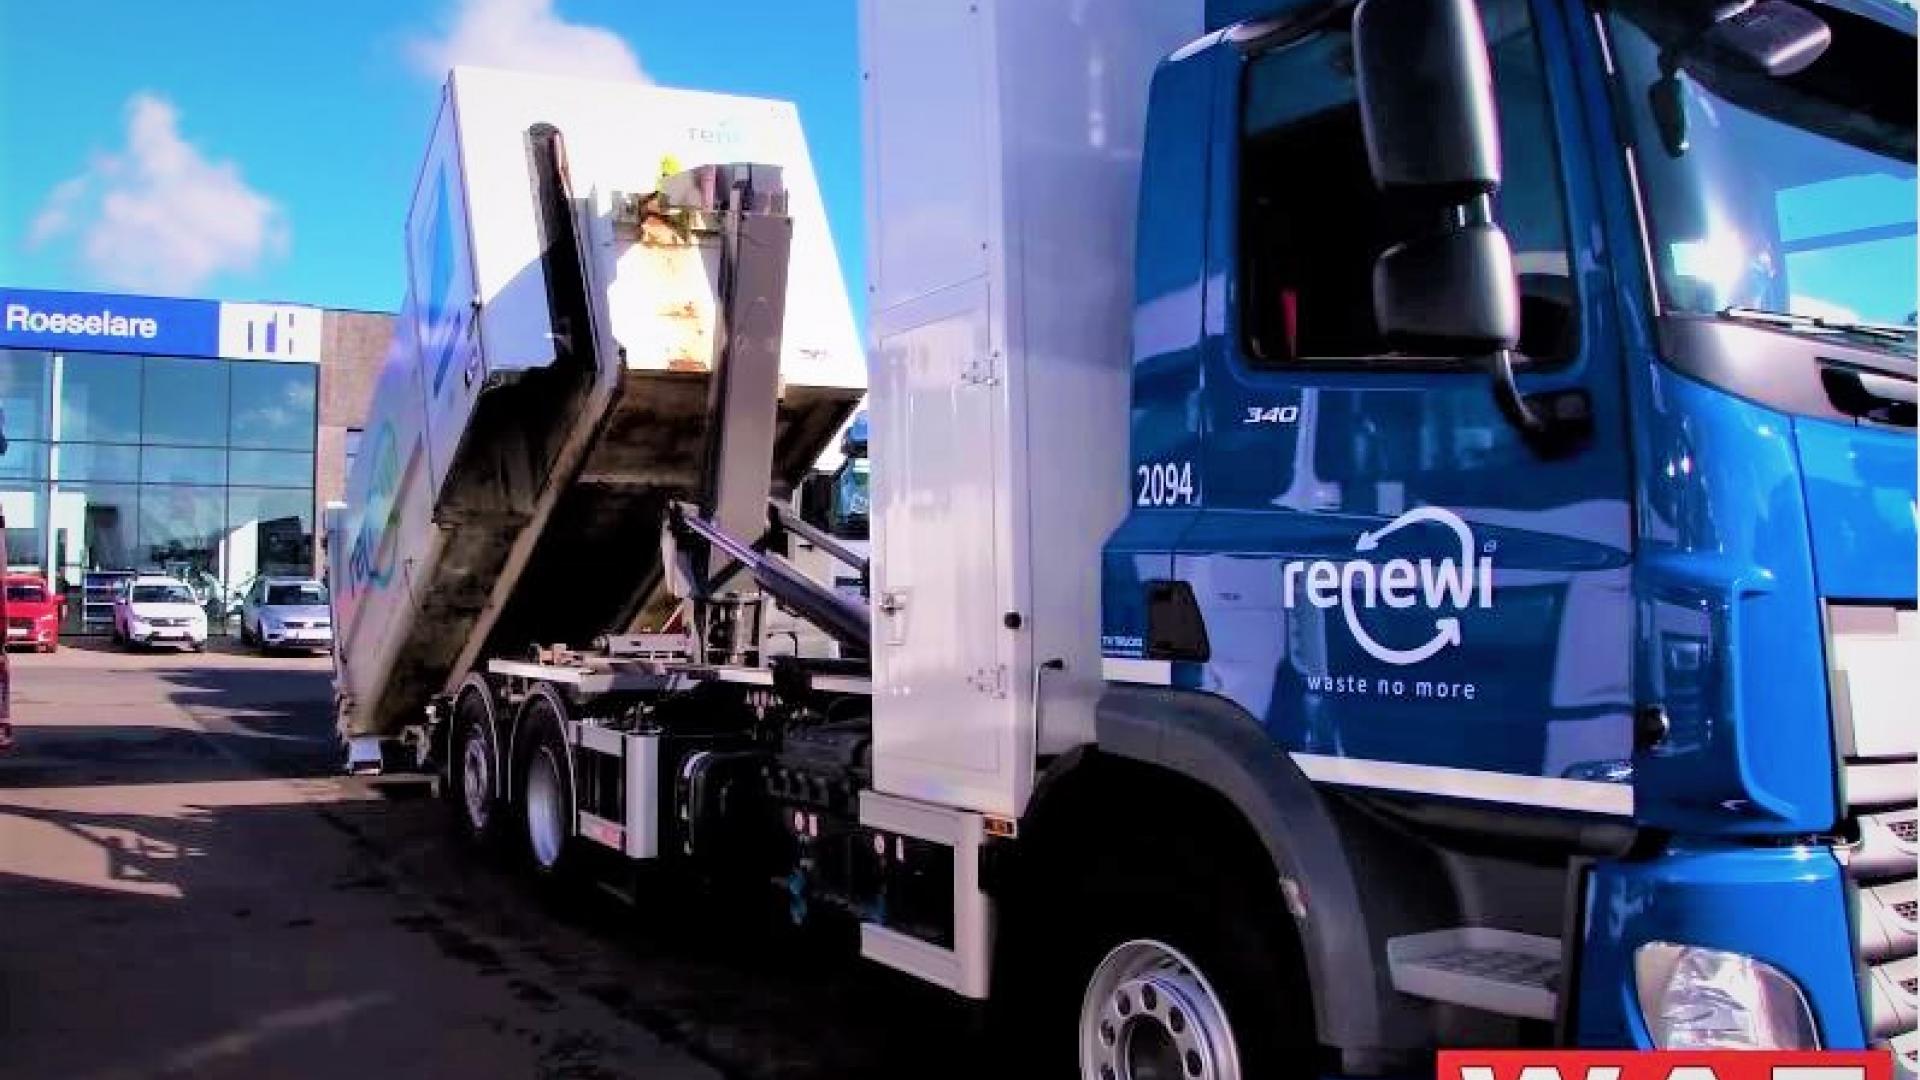 Destradata vehicle for Renewi Belgium